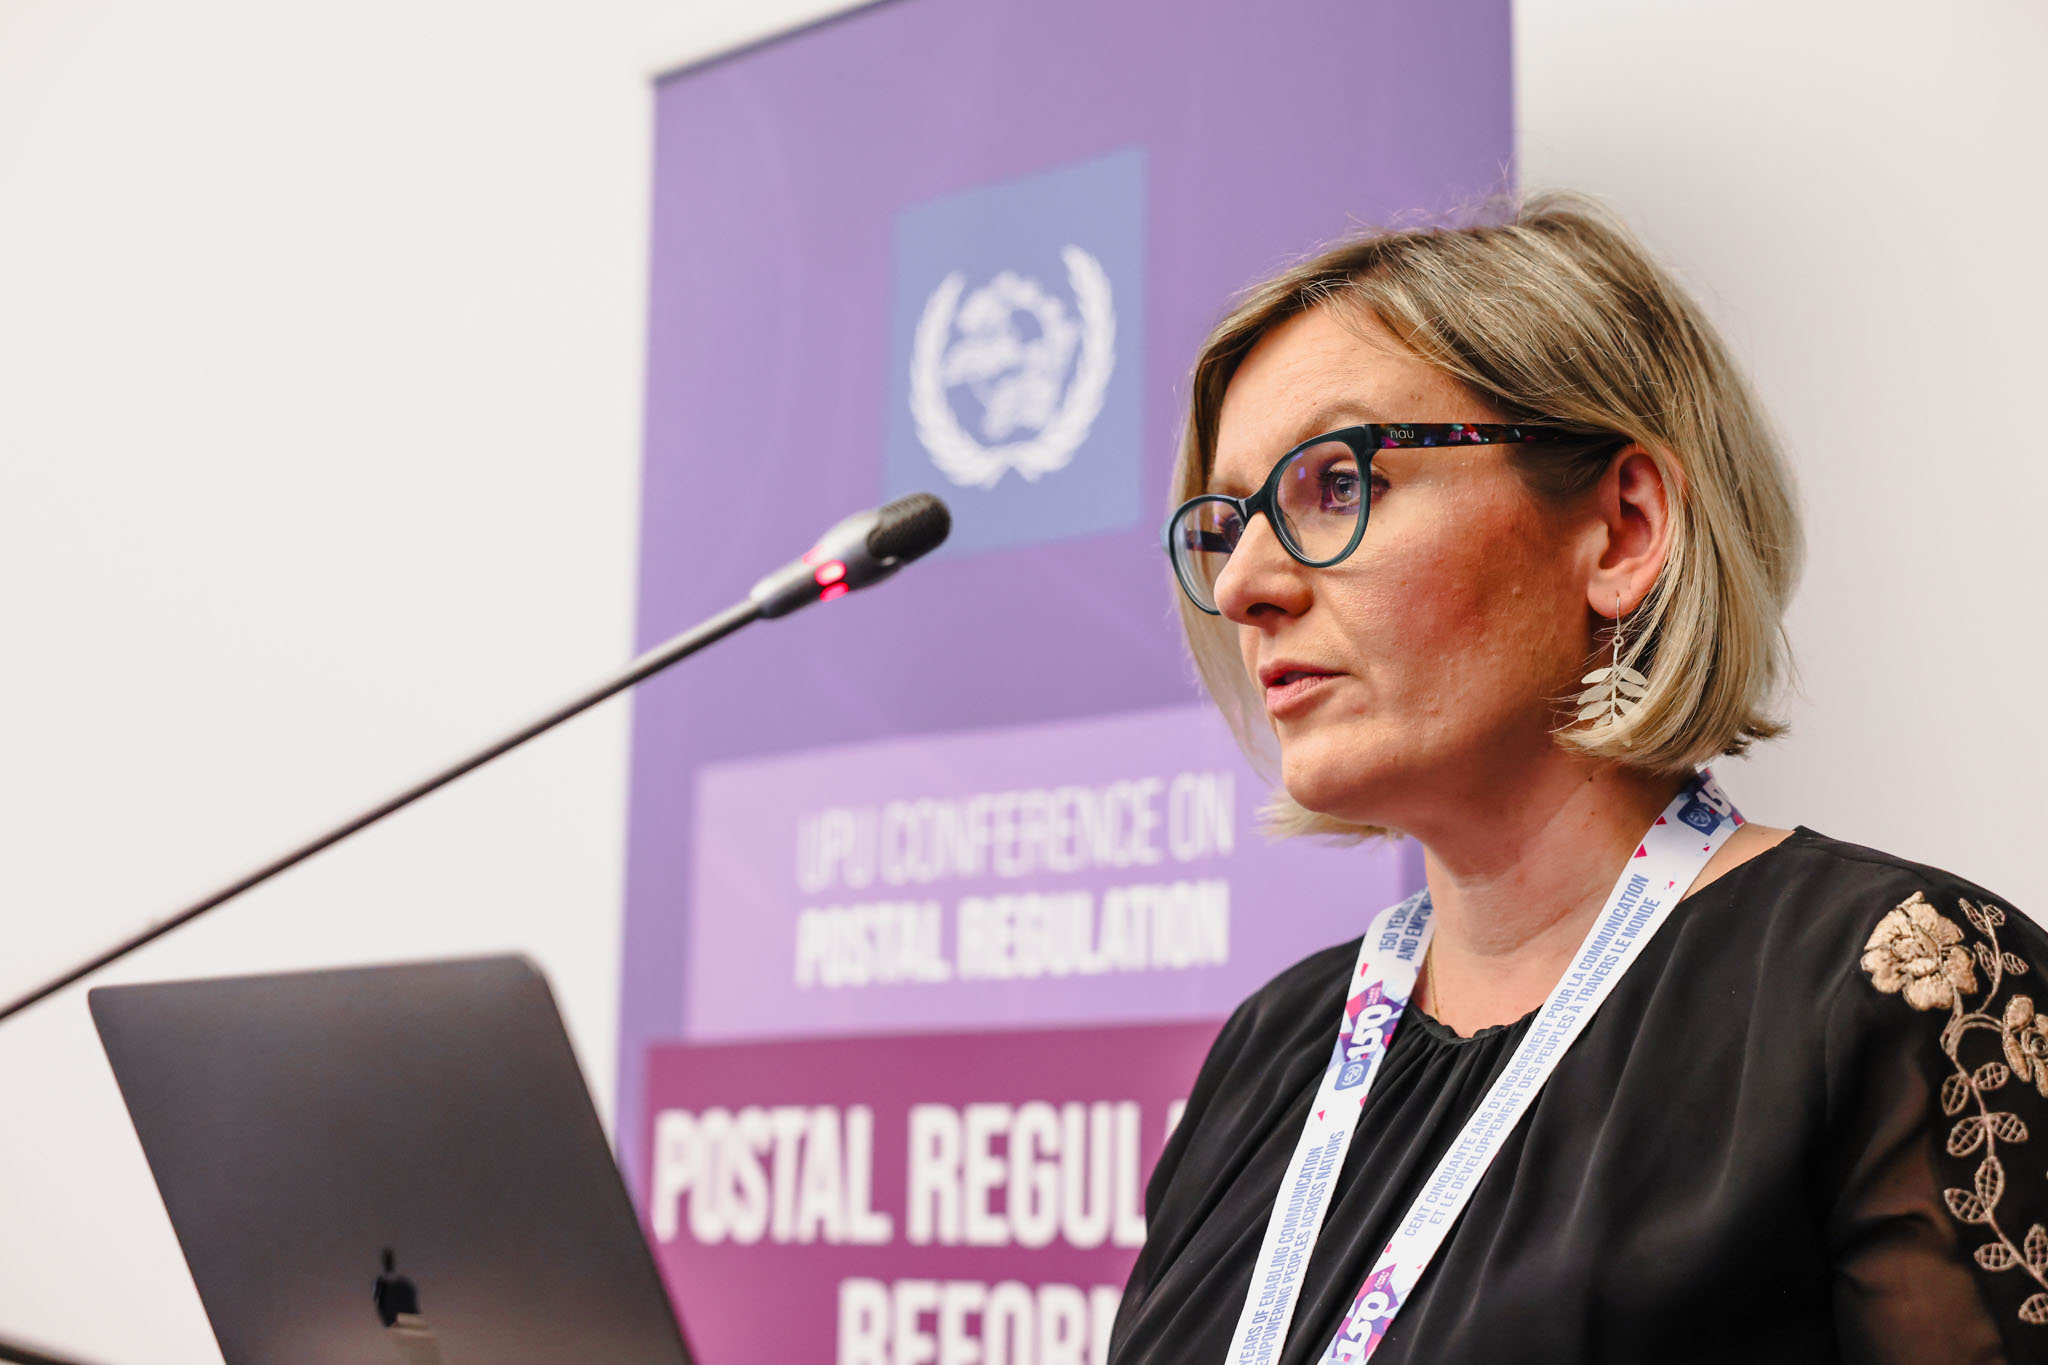 Conférence sur la réforme postale – L’UPU s’appuie sur les perspectives réglementaires mondiales pour redéfinir les services postaux